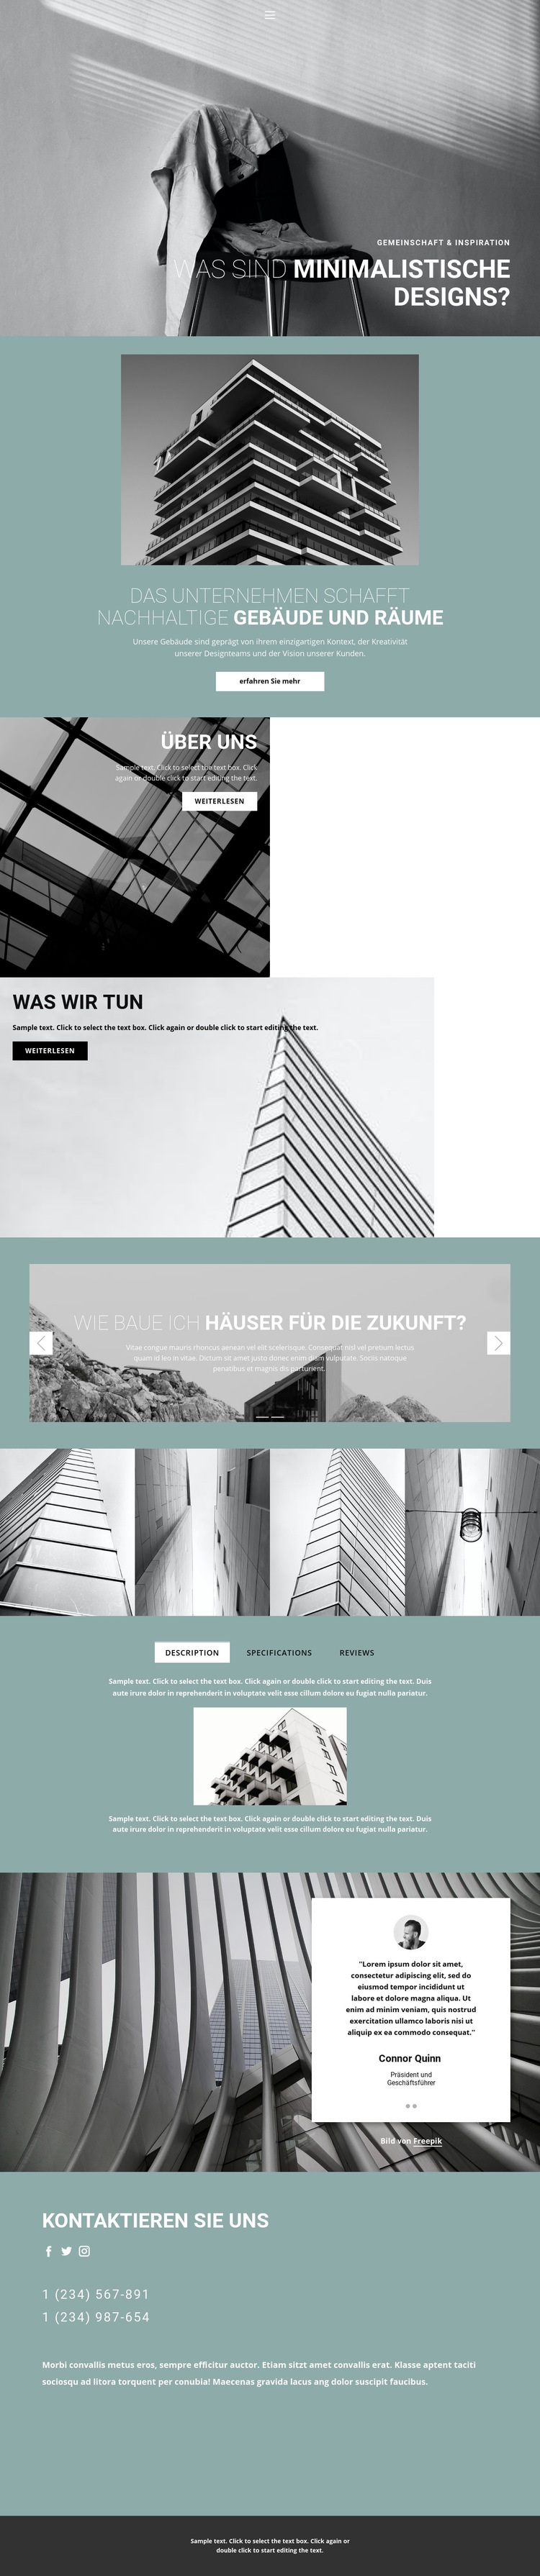 Perfekte Architekturideen Website design